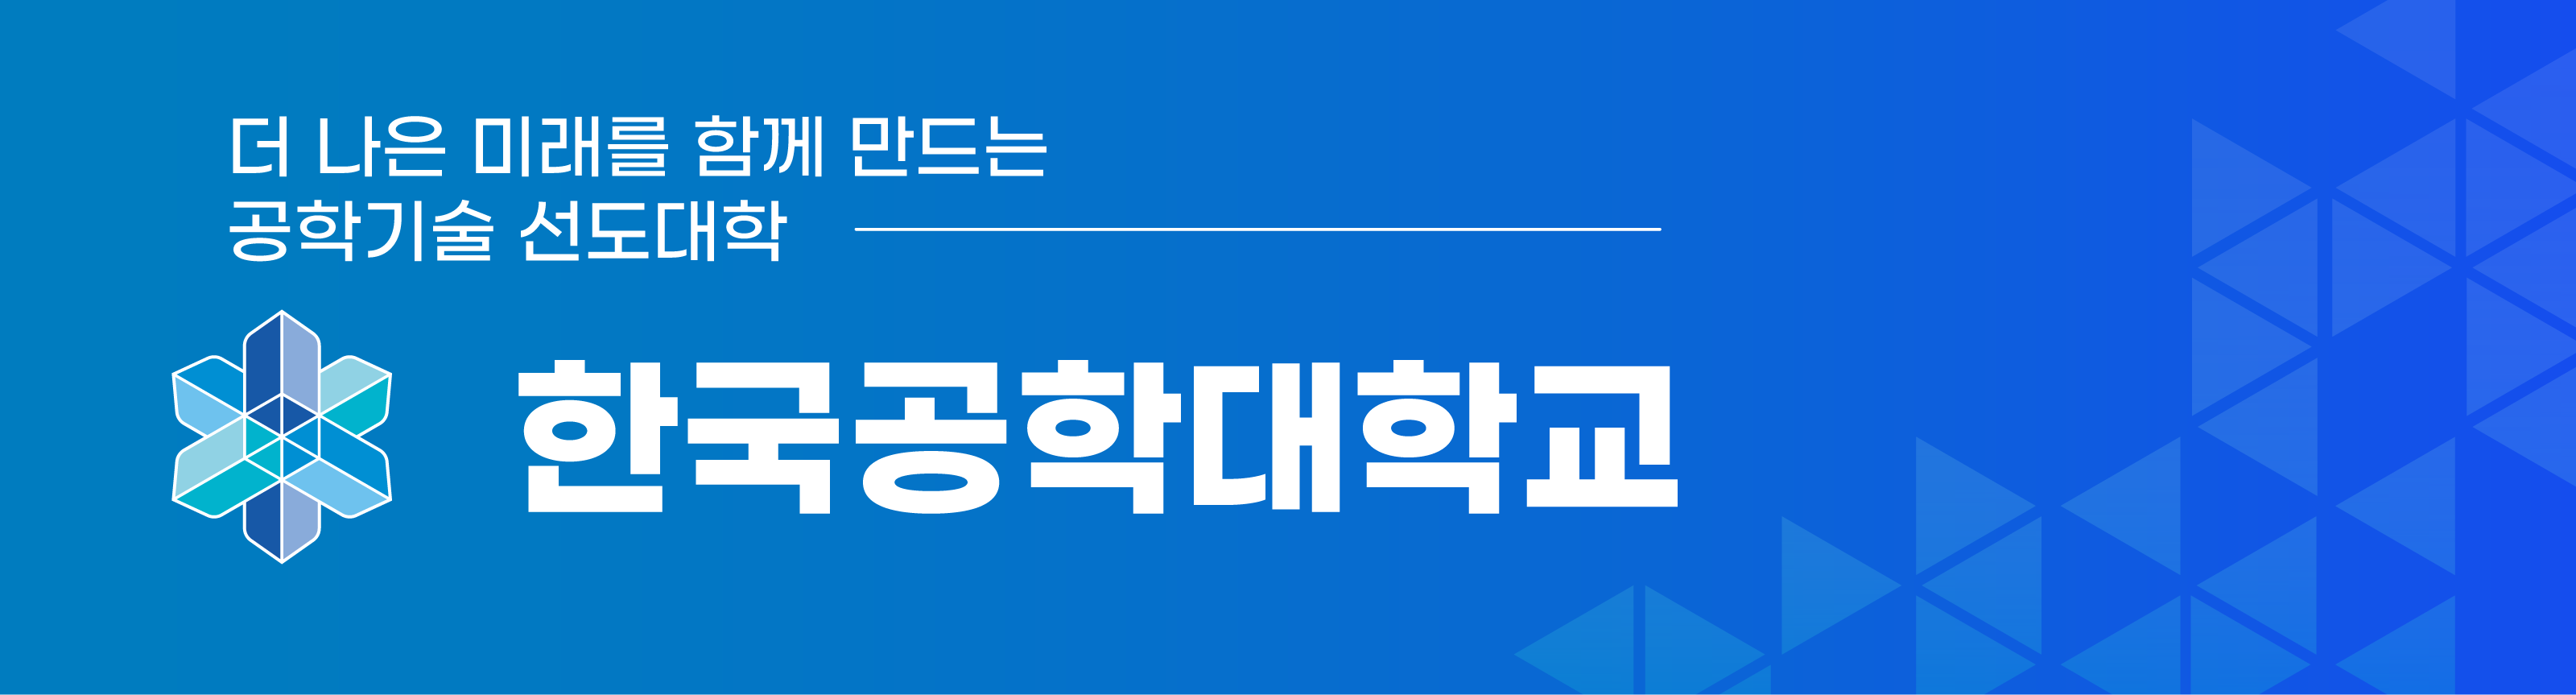 한국공학대학교팝업기본형